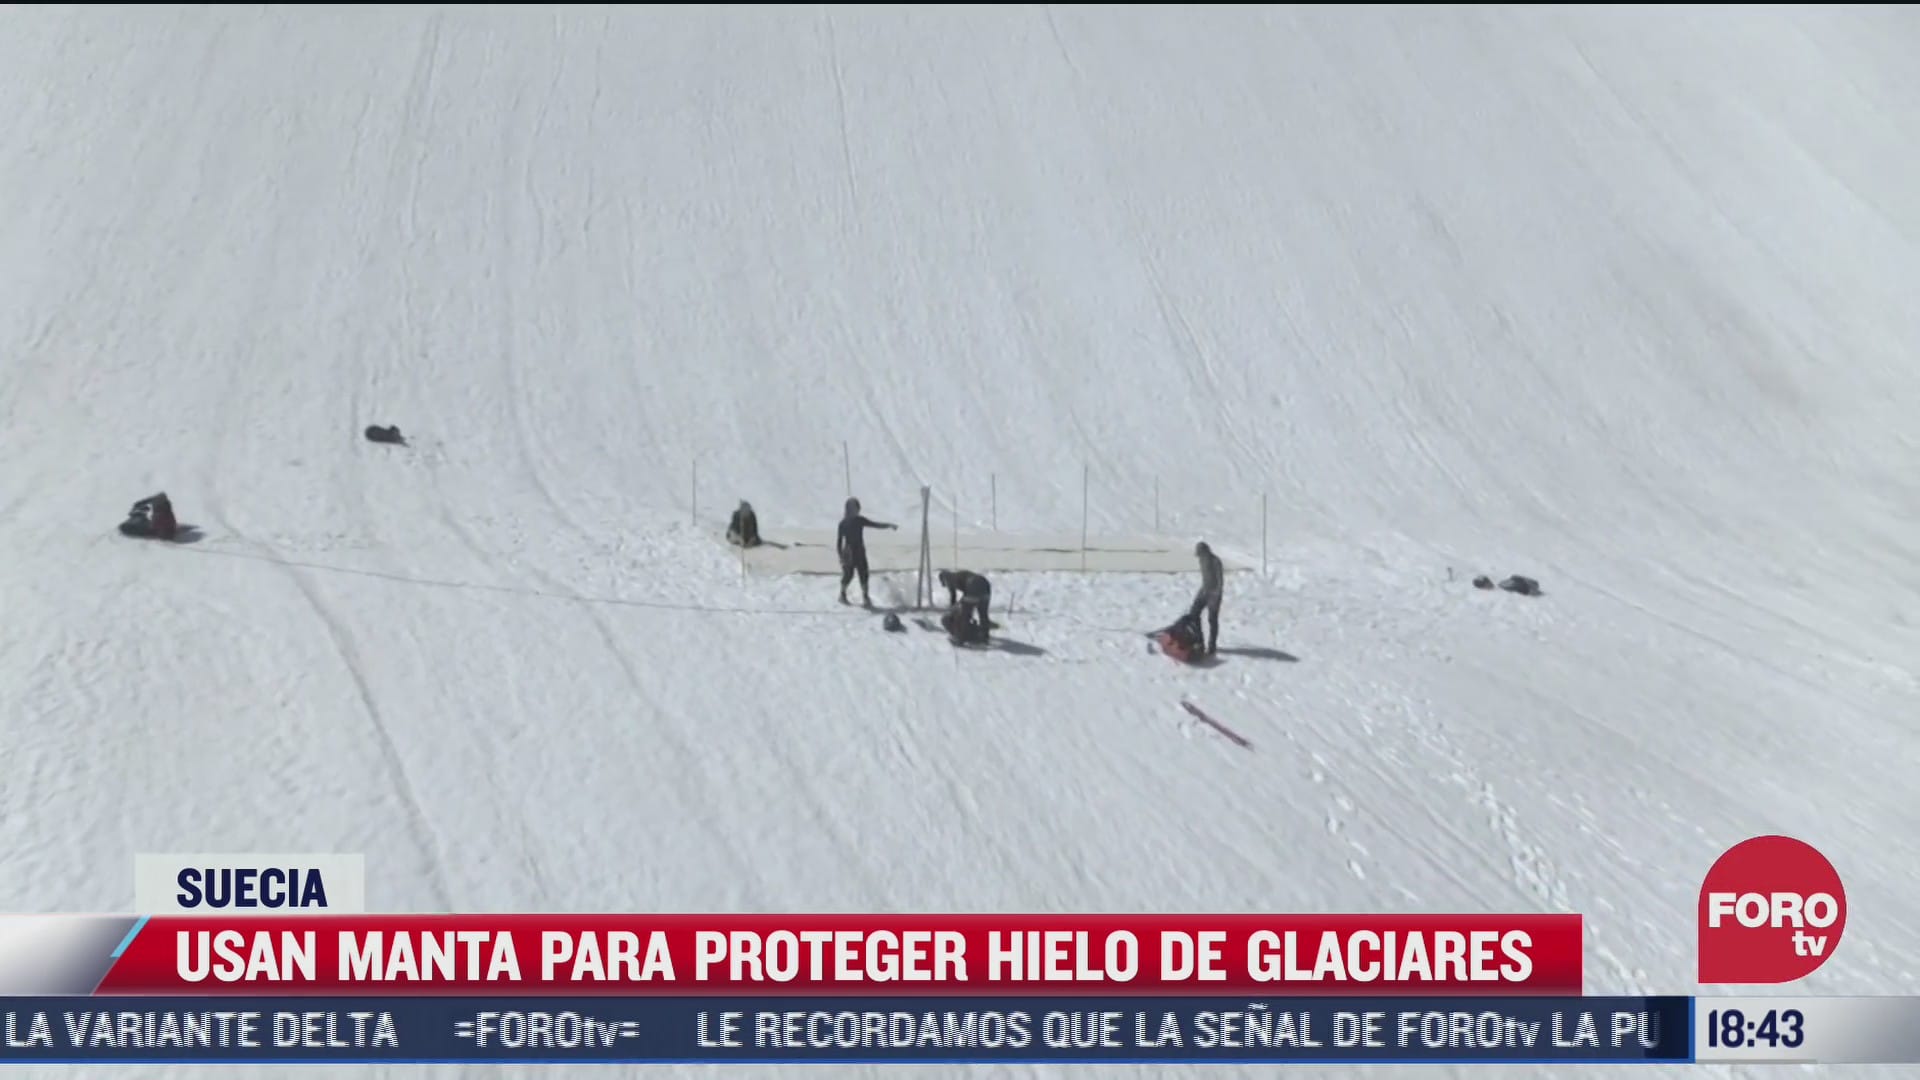 usan manta para proteger hielo de glaciares en suecia